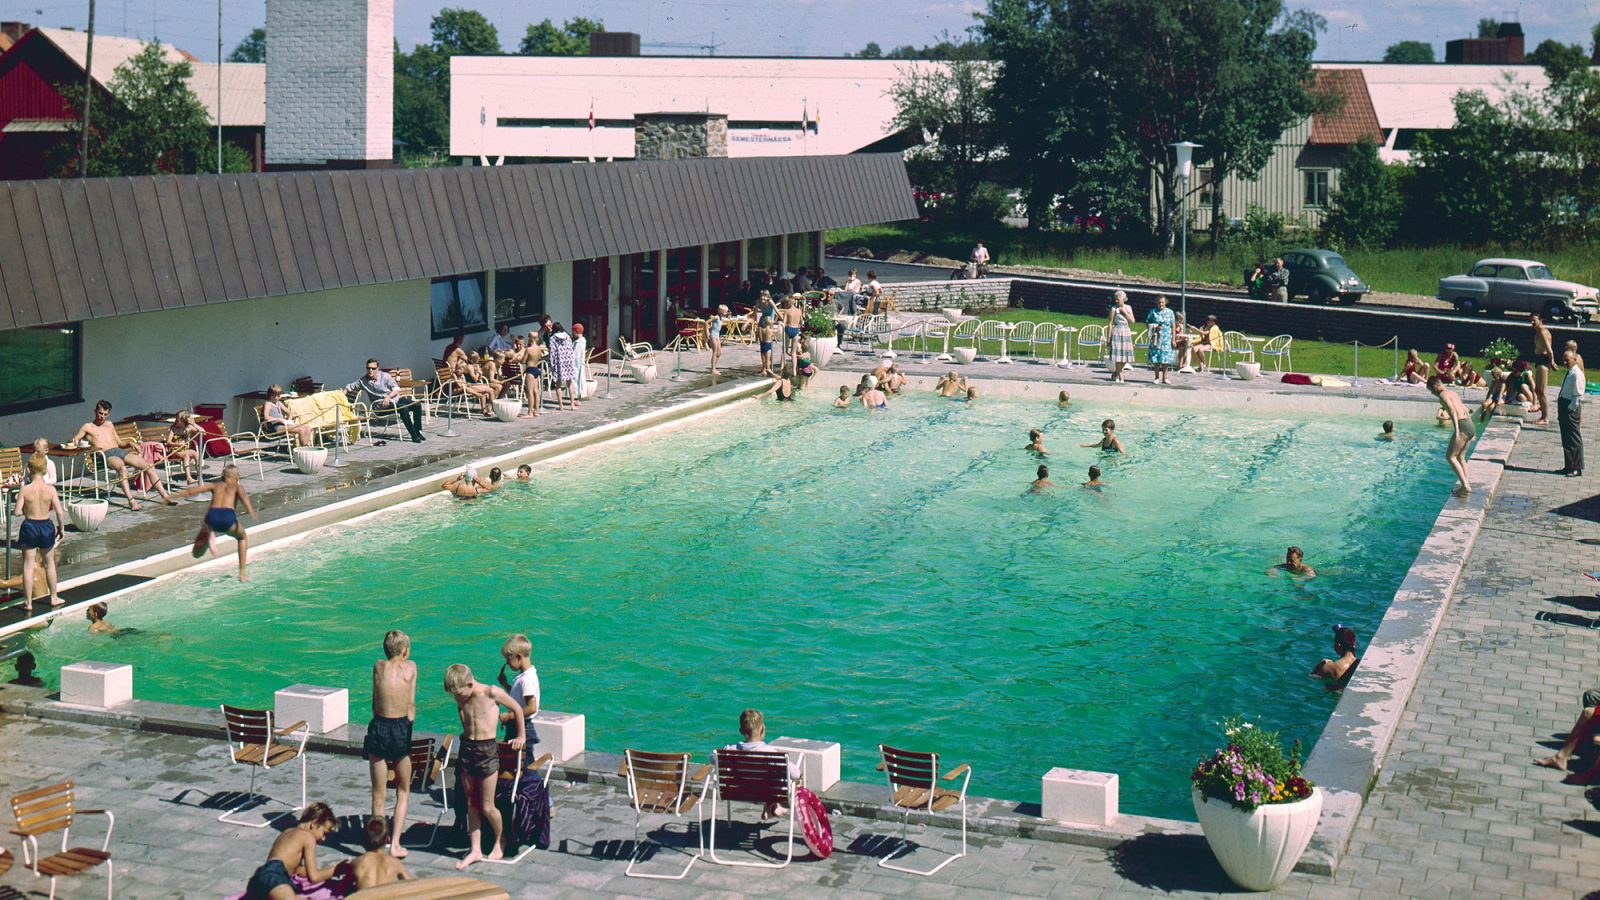 Stor pool full av badande barn intill motellbyggnad, Motell IKEA, bilar av 1950-talsmodell i bakgrunden.